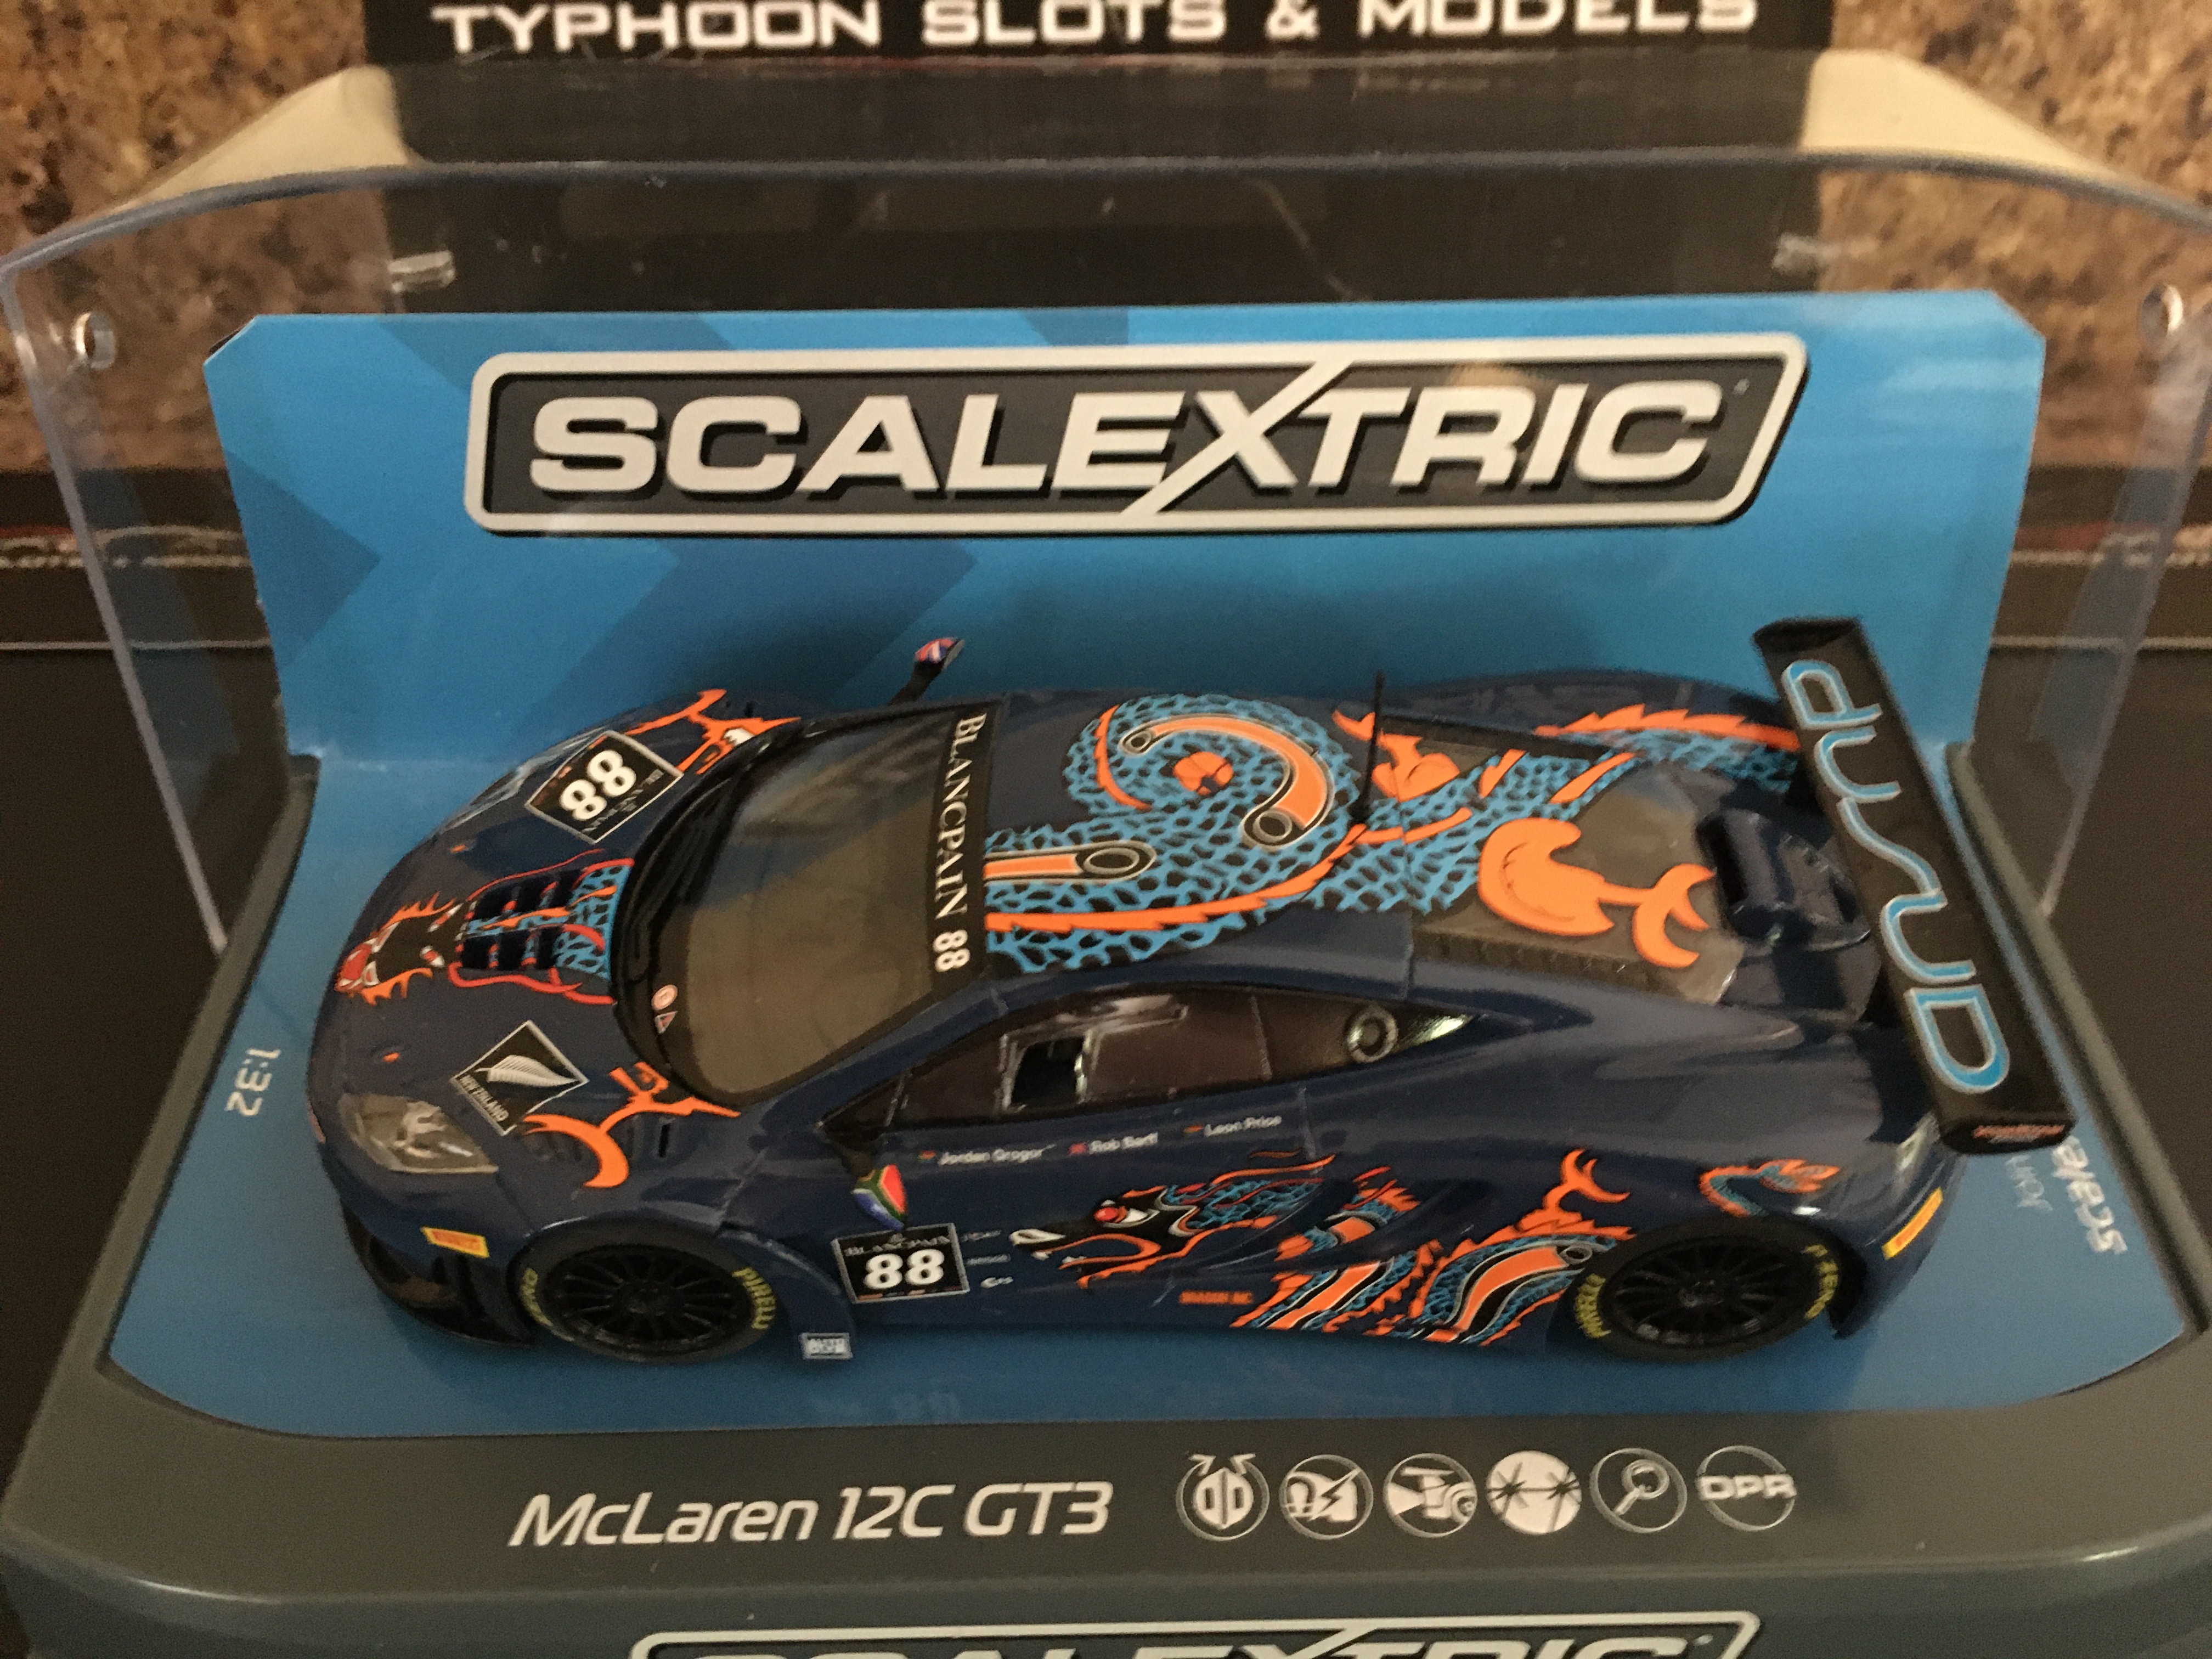 Scalextric McLaren 12C GT3 Von Ryan Racing 1:32 Slot Car C3850 Vehicle Replica 